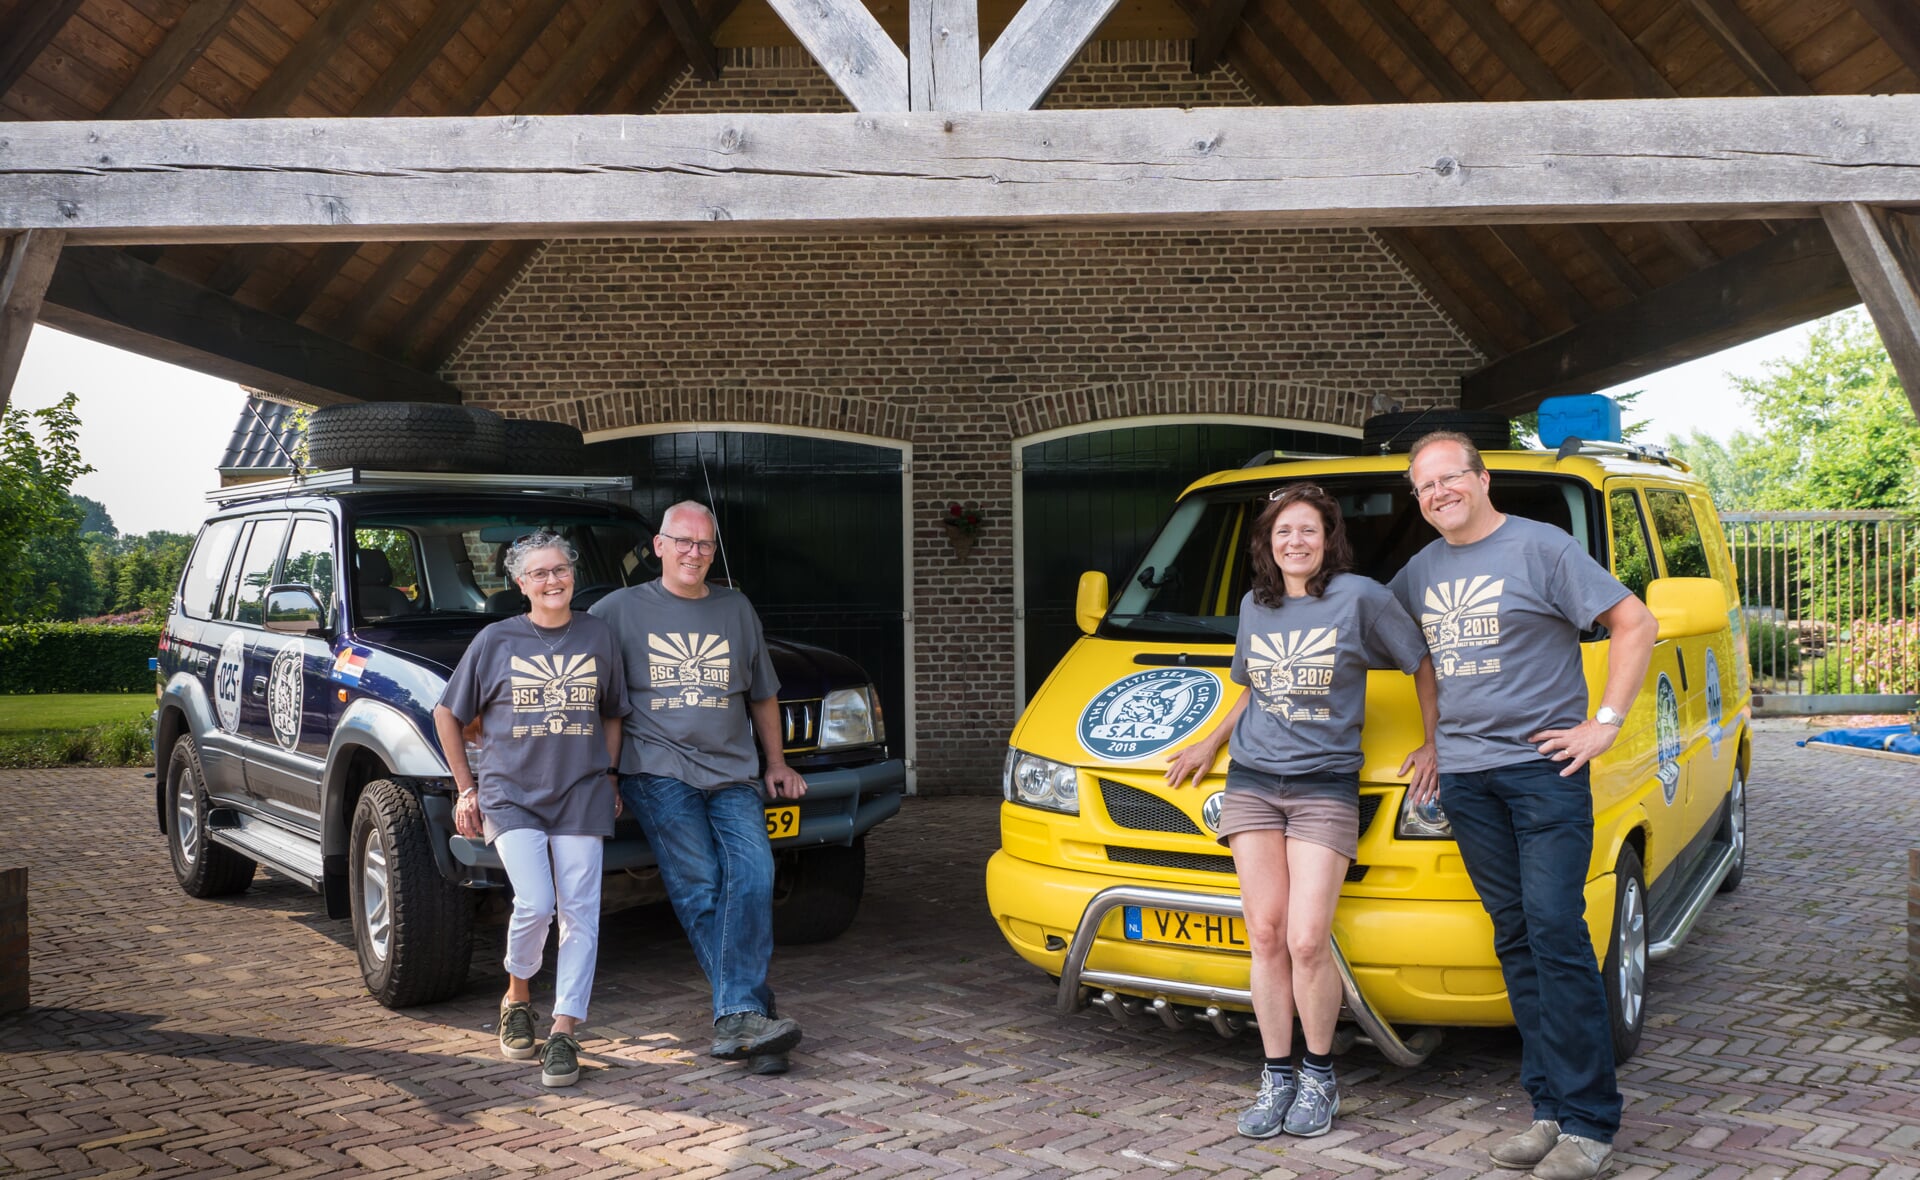 Johan en Marijke van Beek en Kees en Hèlen Berkelmans willen met de rally zoveel mogelijk geld ophalen voor respectievelijk stichting Het Vergeten Kind en Dream4Kids. (Foto: Daisy Renders).